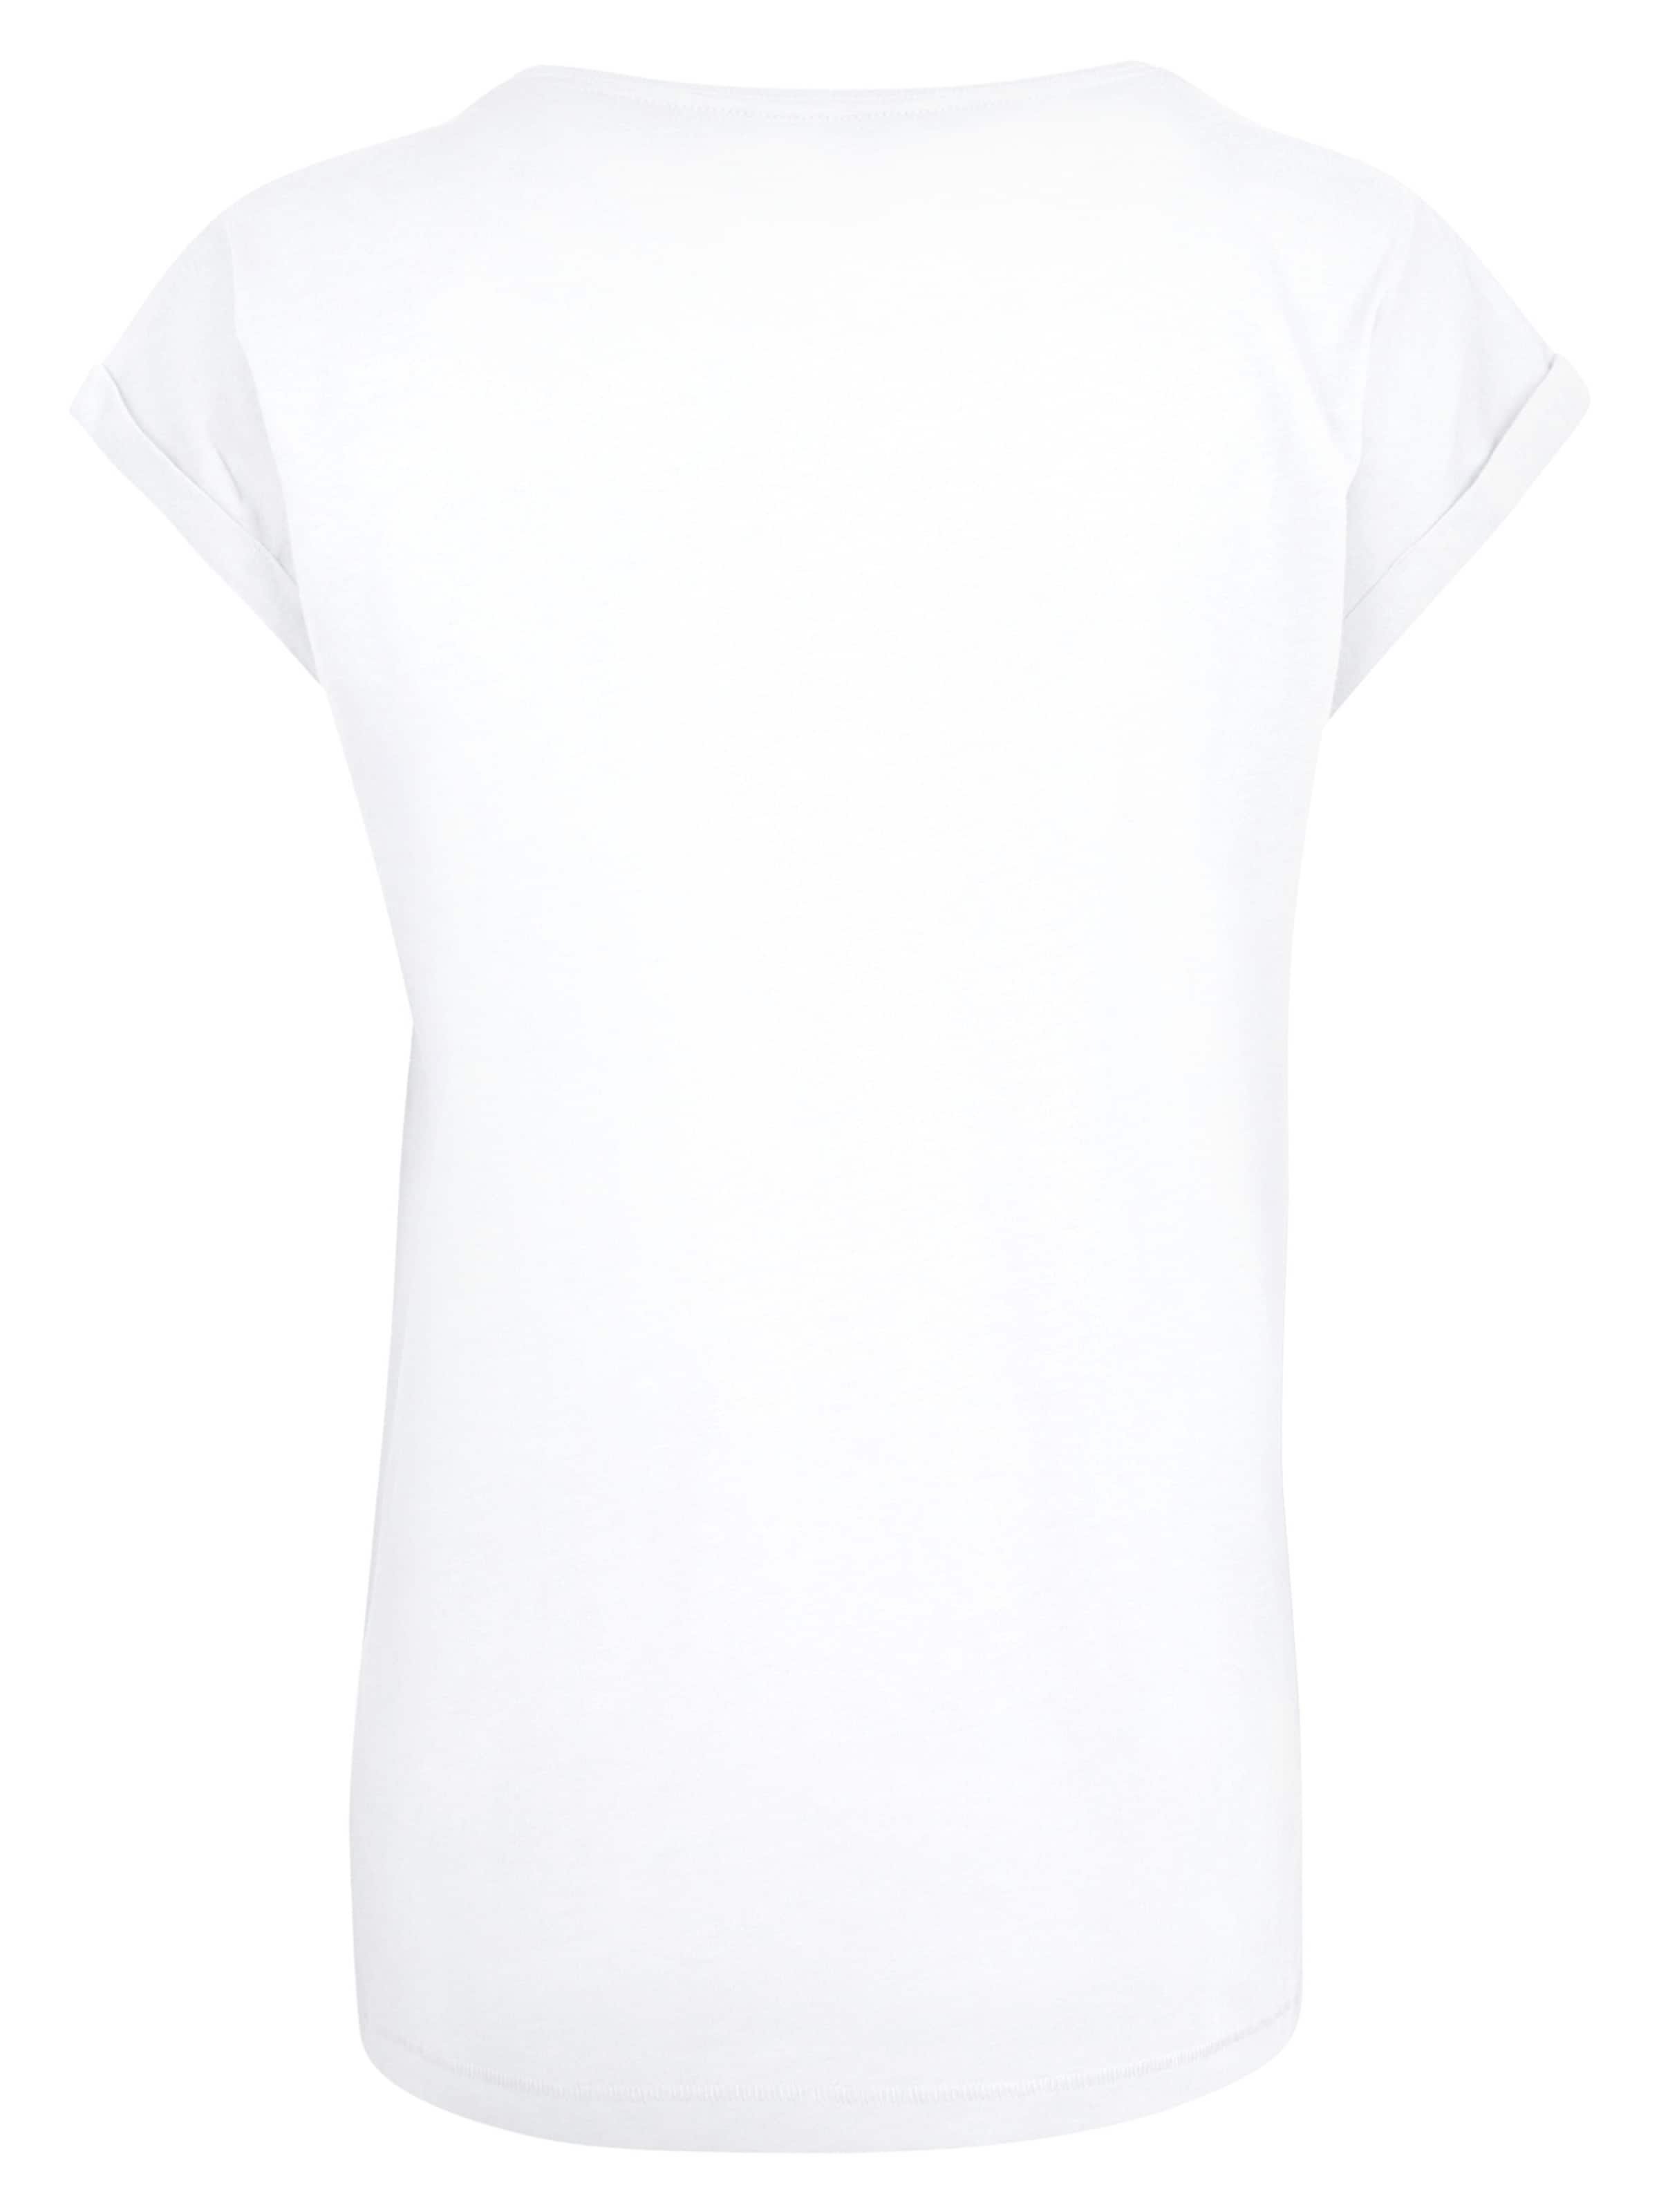 Frauen Shirts & Tops F4NT4STIC T-Shirt 'Aladdin' in Weiß - PS51517